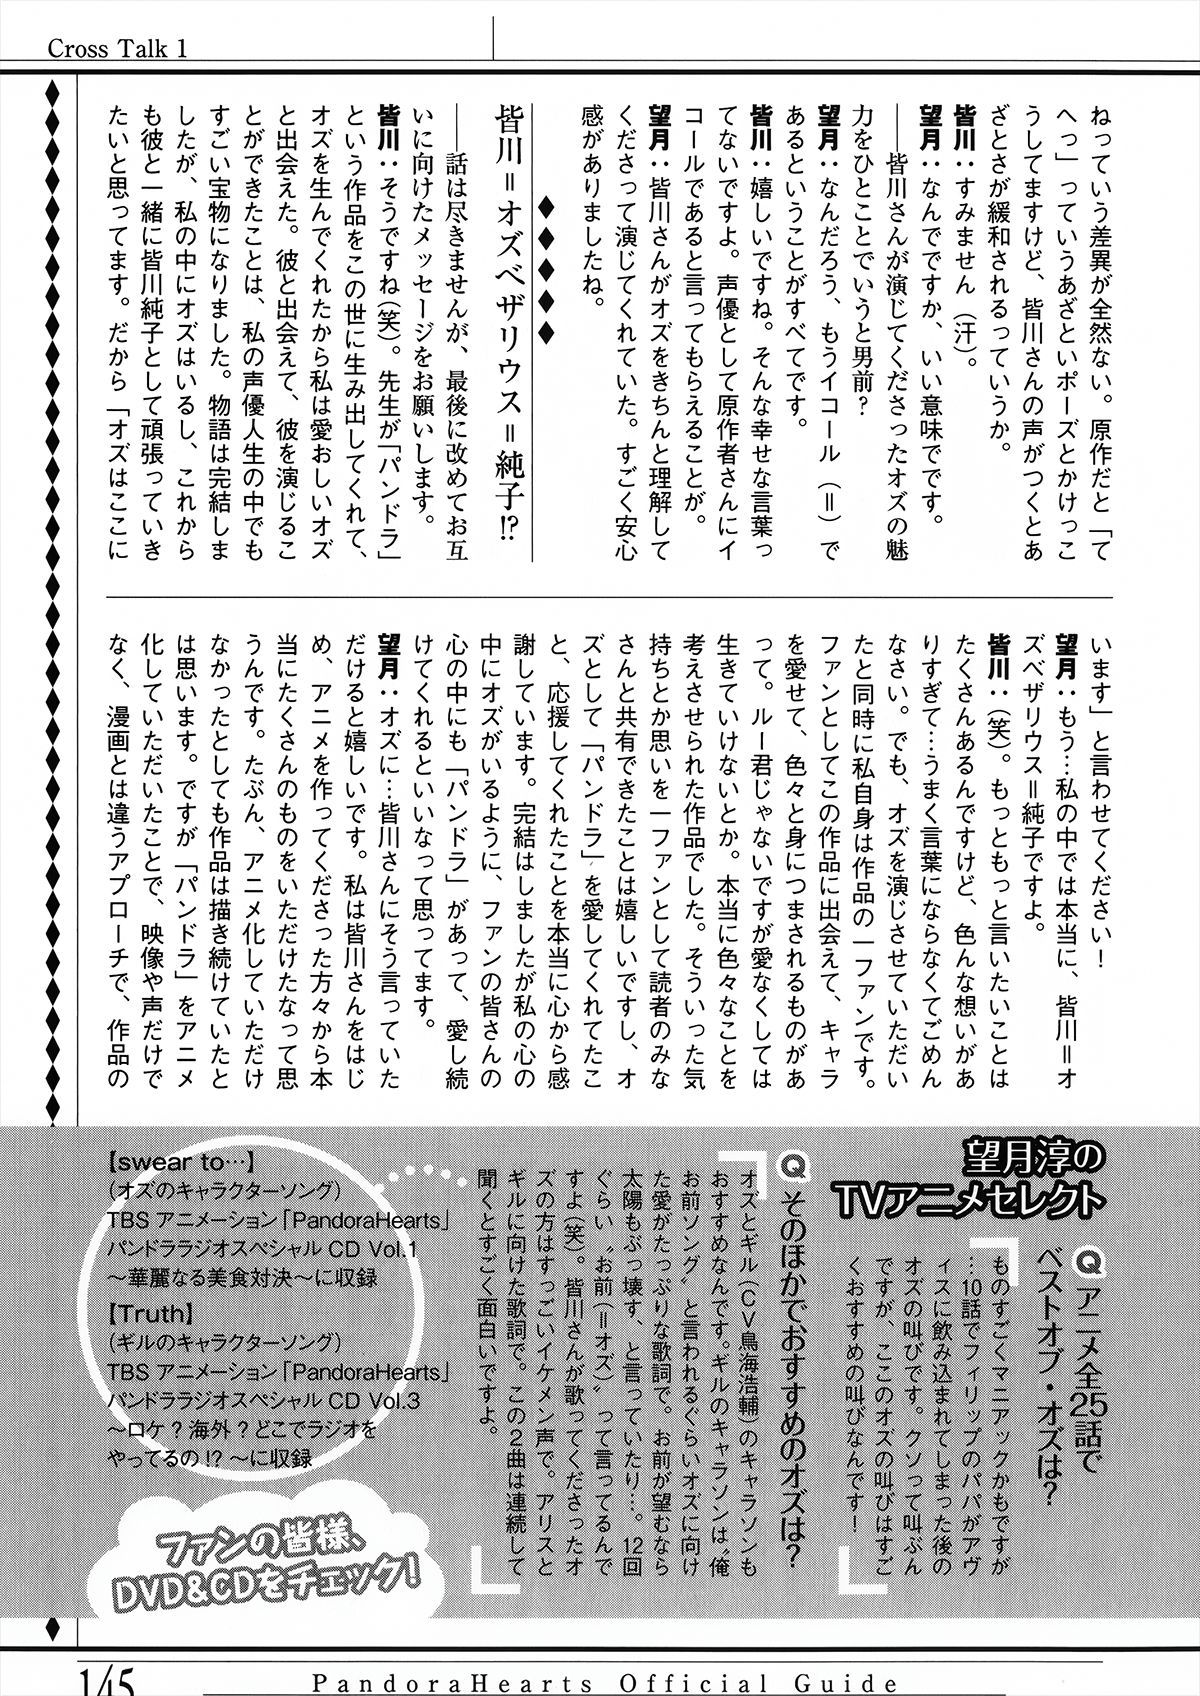 Pandora Hearts Guidebook 24+1: Last Dance パンドラハーツ オフィシャルガイド 24 + 1 ~Last Dance! 149